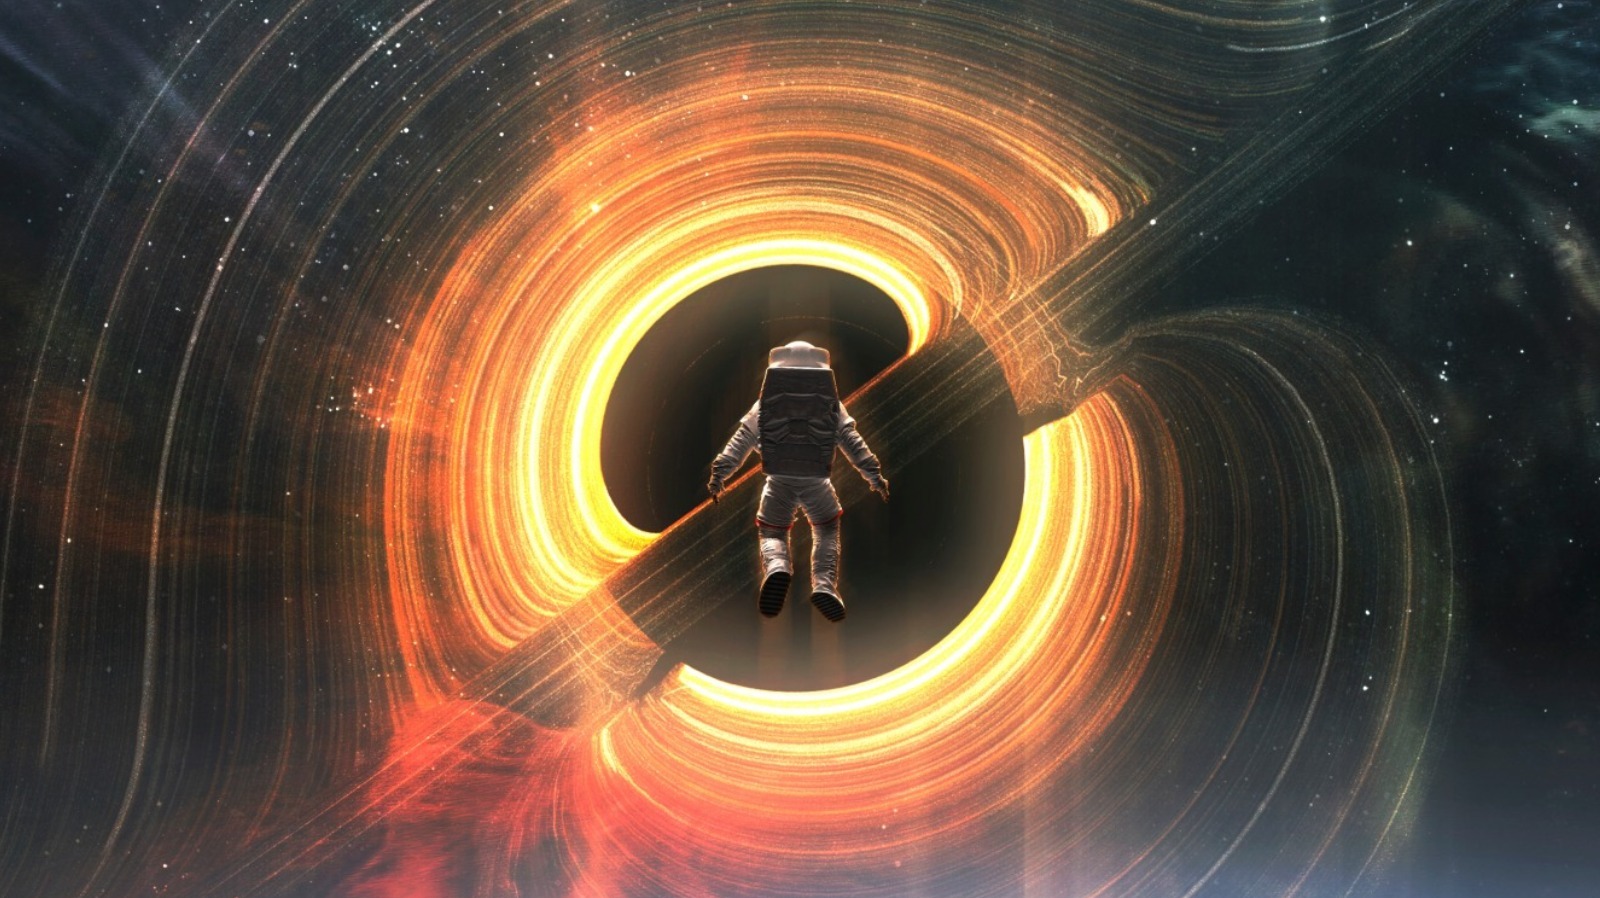 Qu'y a-t-il à l'intérieur d'un trou noir ? Voici ce que disent les astronomes